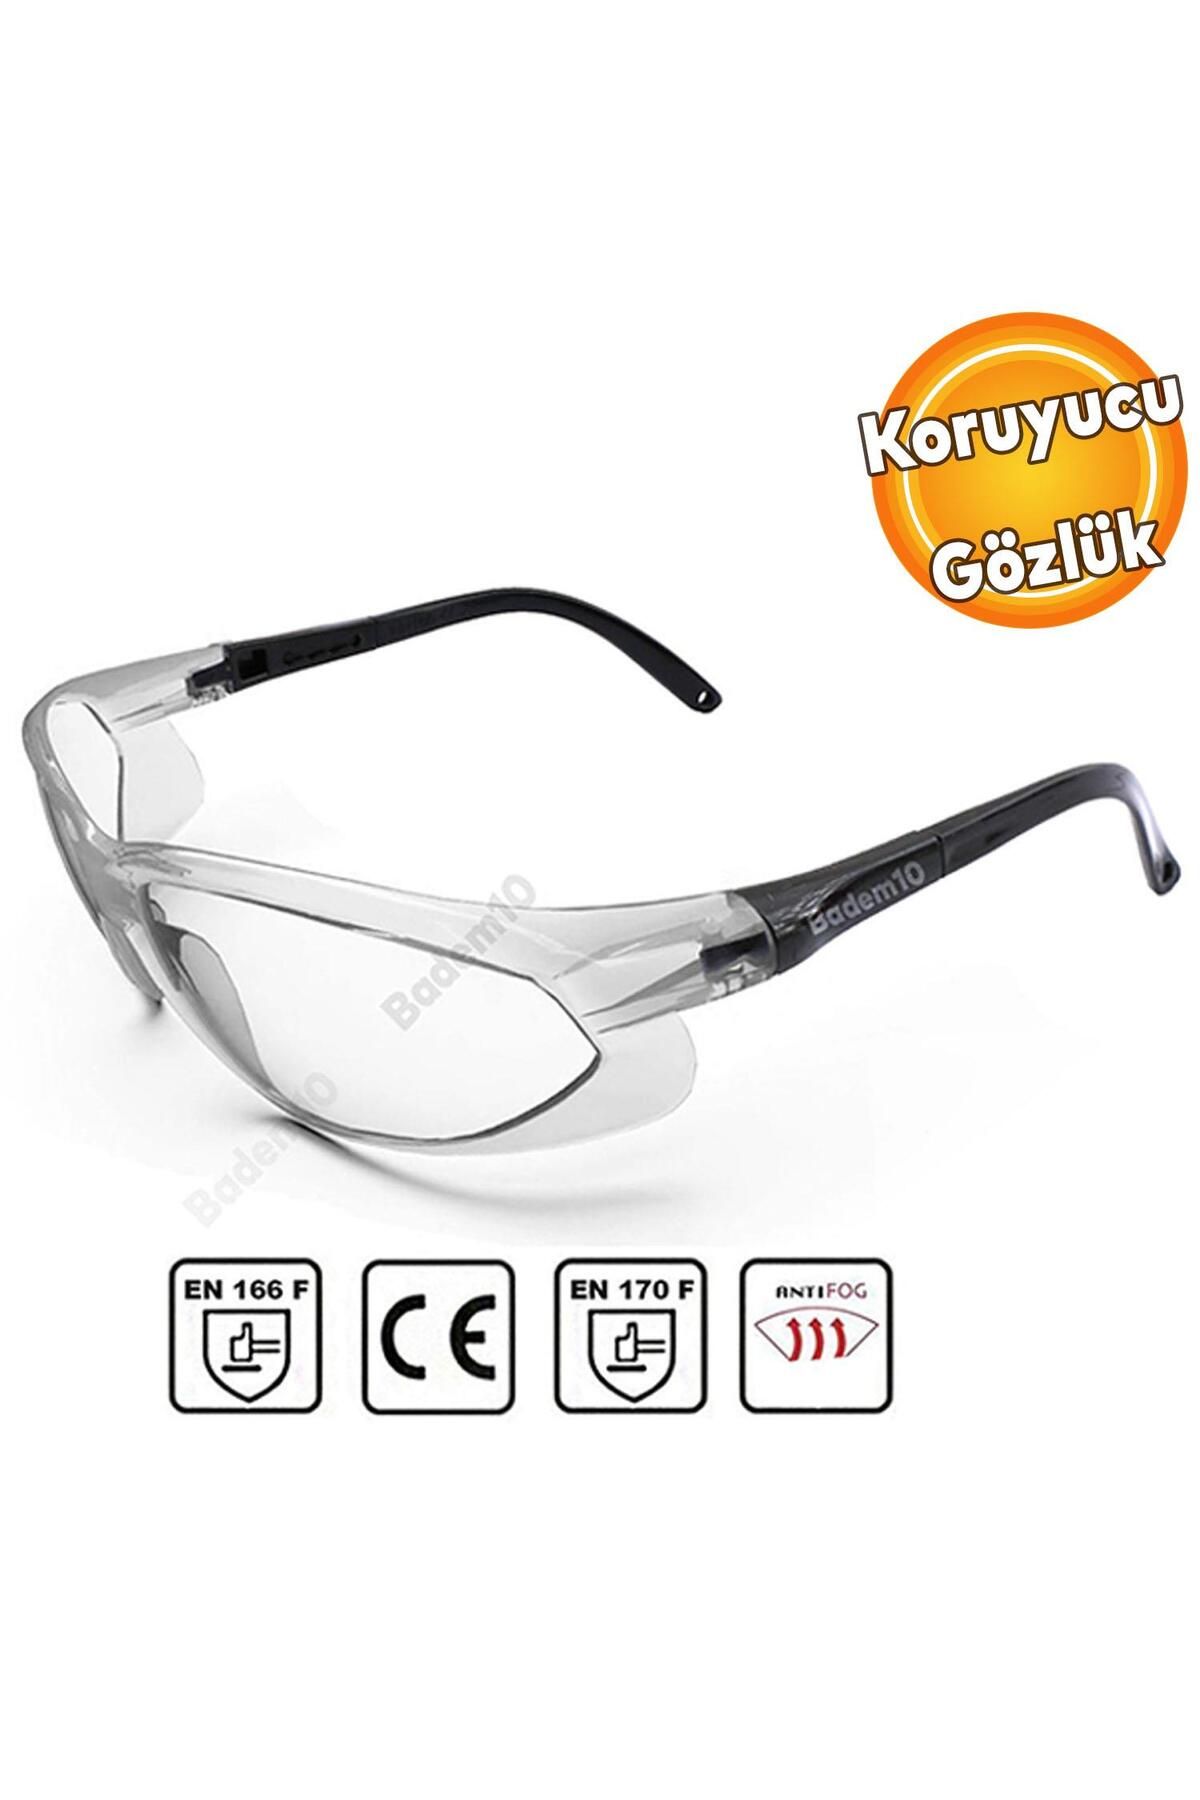 Badem10 İş Güvenlik Güvenliği Gözlüğü Lazer Uv Laboratuvar Koruyucu Gözlüğü Gözlük Şeffaf S900